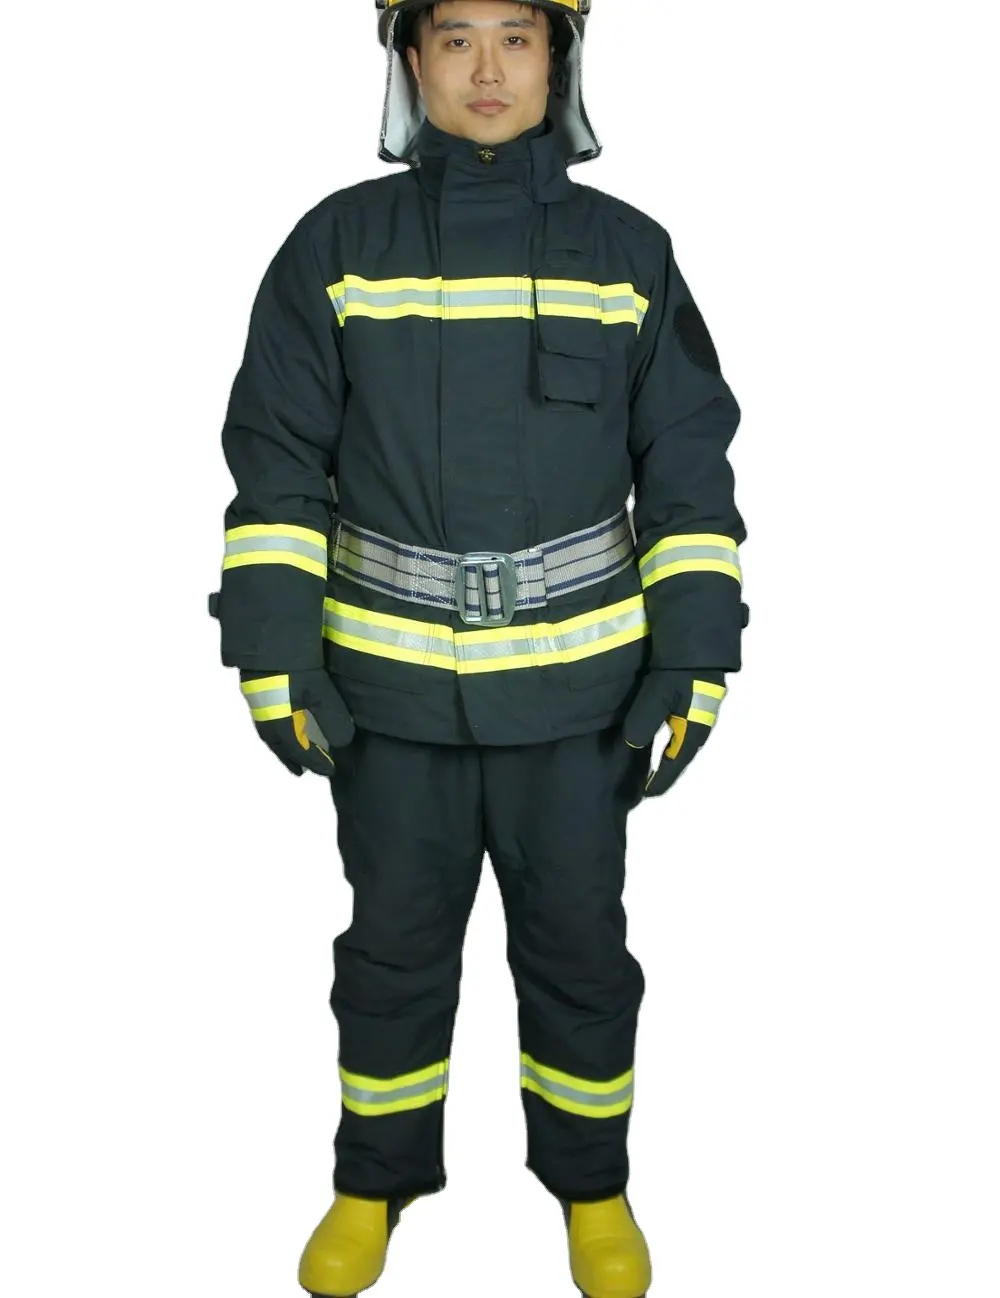 Aramid ดับเพลิงดับเพลิงสารหน่วงไฟ EN469 CE 3C ชุดสูทความปลอดภัย